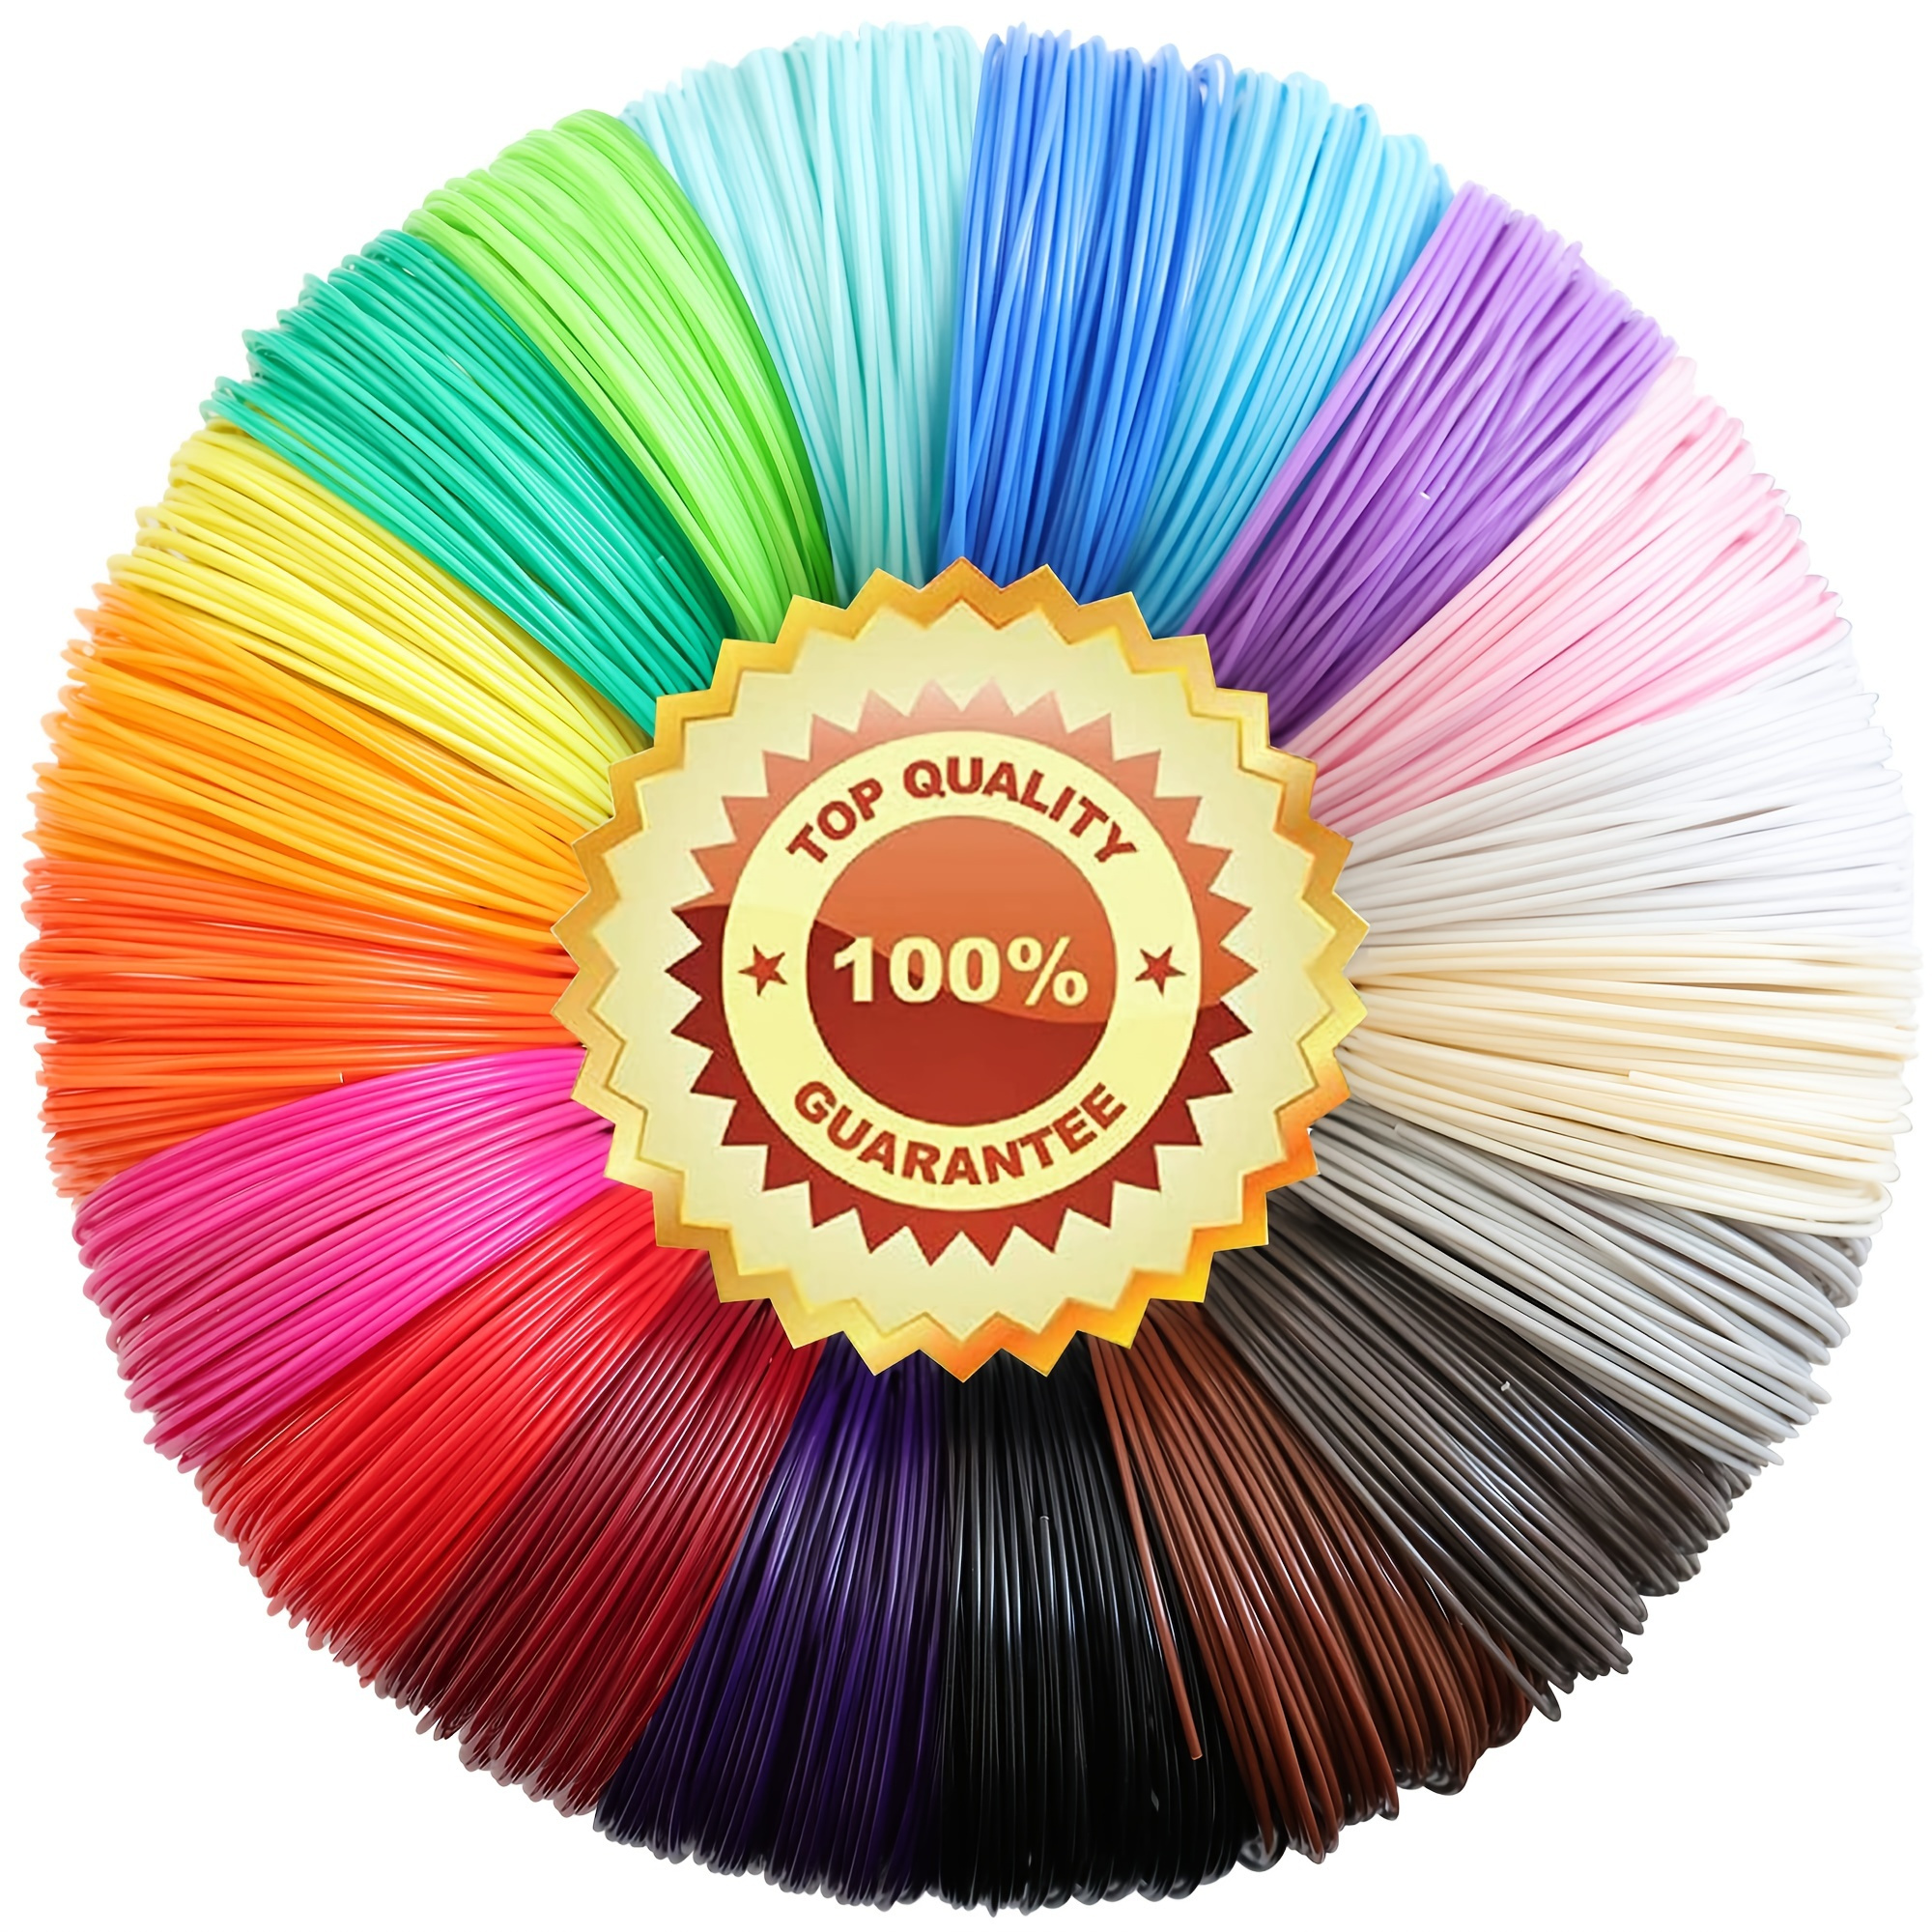 

20 Colors*5 Meters, Supplies Consumables For High Temperature 3d Printing Pen, 20 Colors 3d Pen Pla Filament Refills, Each Color 16 Feet, Total 320 Feet